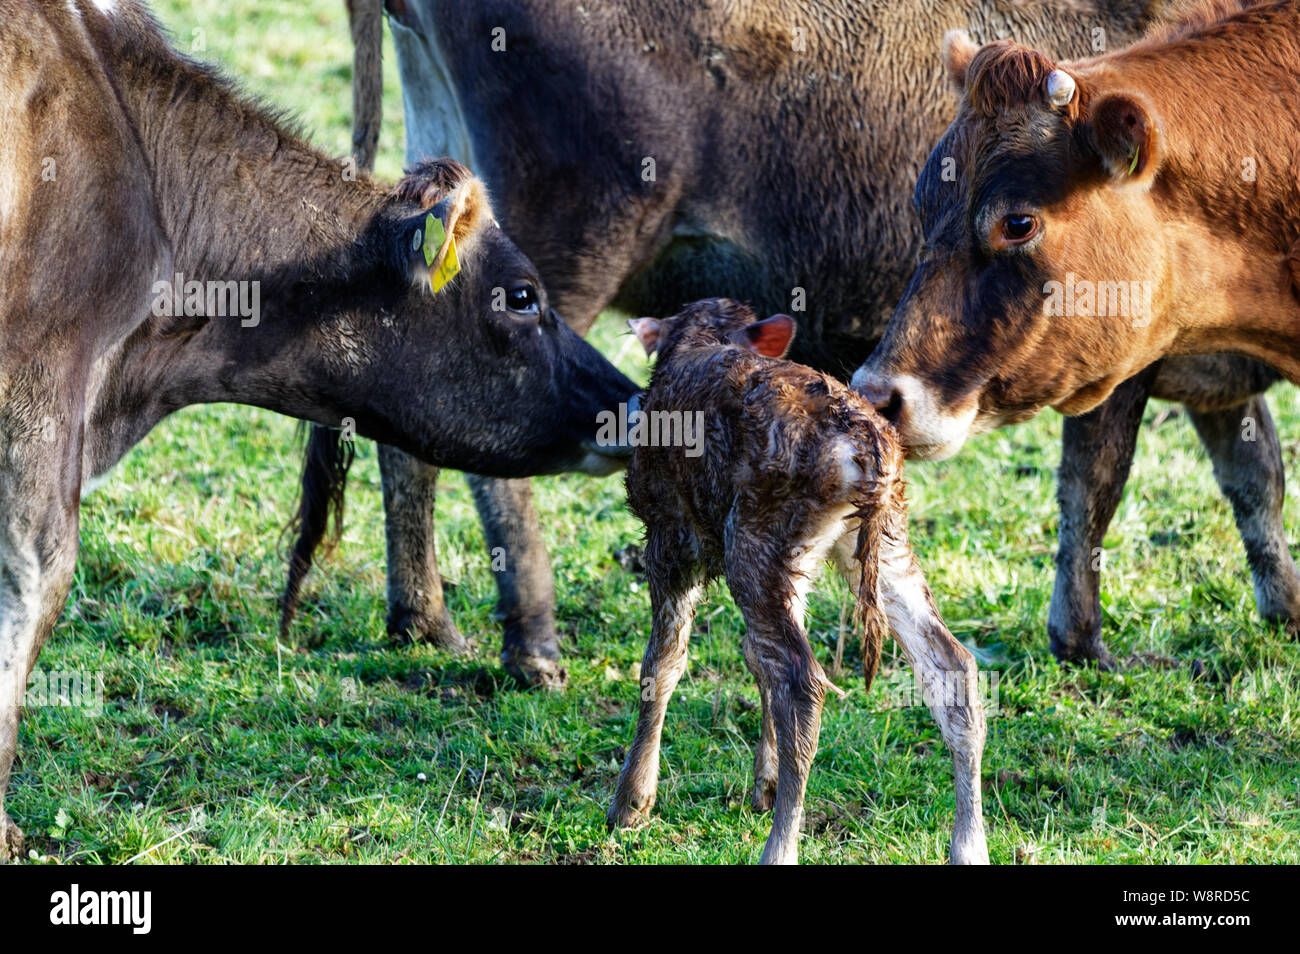 Une mère vache laitière avec son nouveau né, une autre vache veau regarde sur Banque D'Images